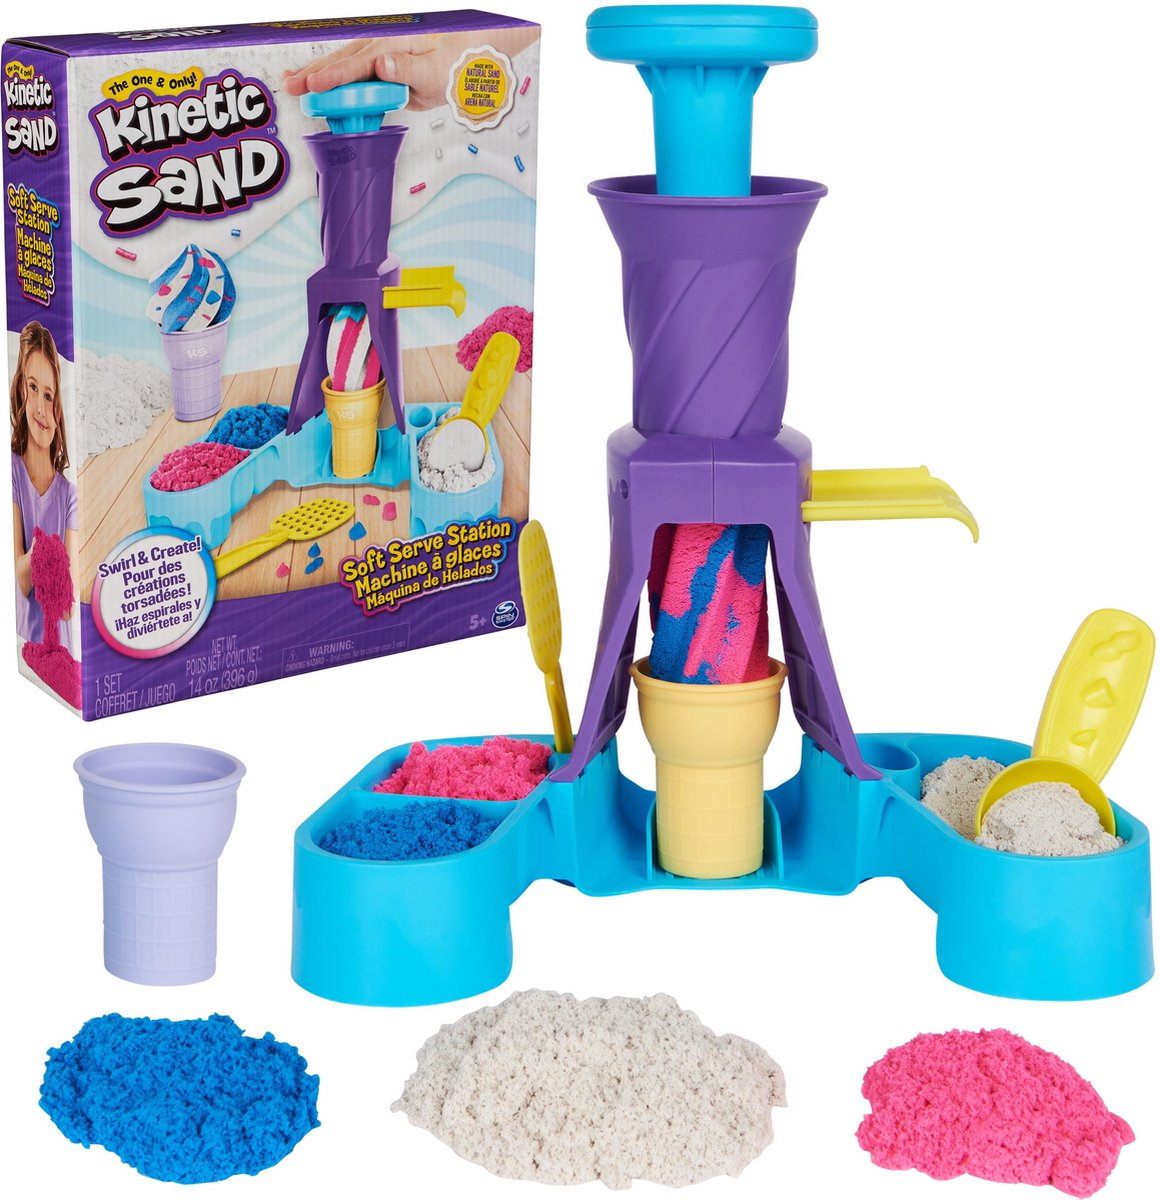 Kinetic Sand - Softijsjes Speelset met 396 g speelzand in blauw roze en wit - 2 ijshoorntjes en 2 stuks gereedschap - Sensorisch speelgoed